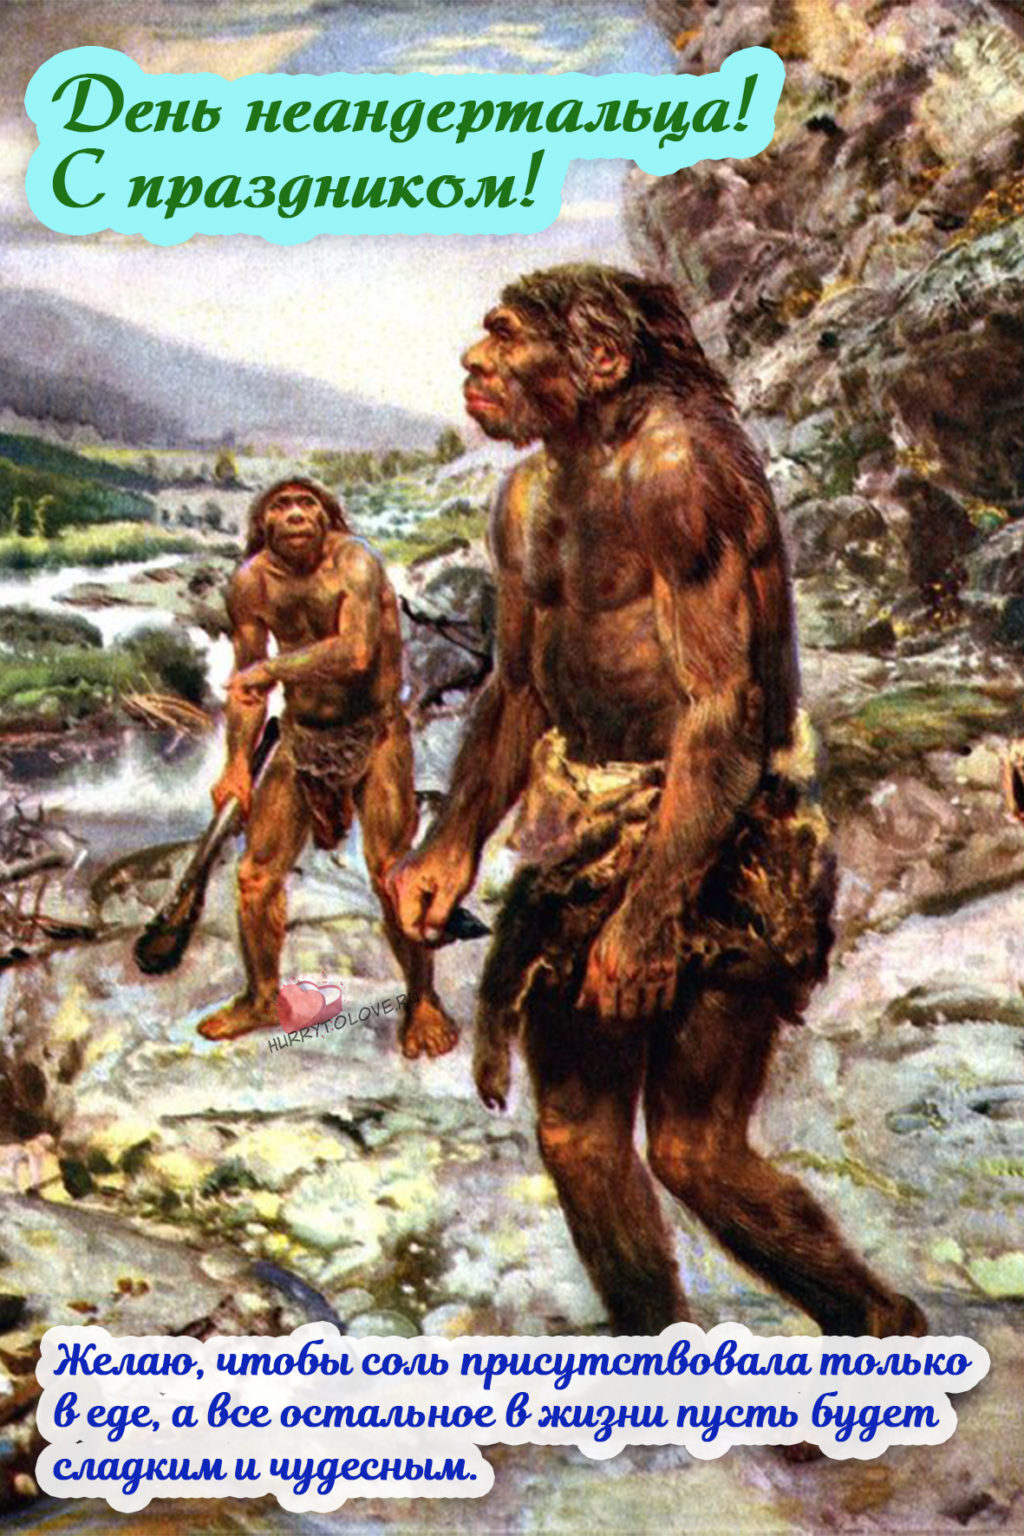 Первобытные люби. Палеоантропы или древние люди неандертальцы. Древние люди - Палеоантропы, неандертальцы. Древние люди Палеоантропы рост.